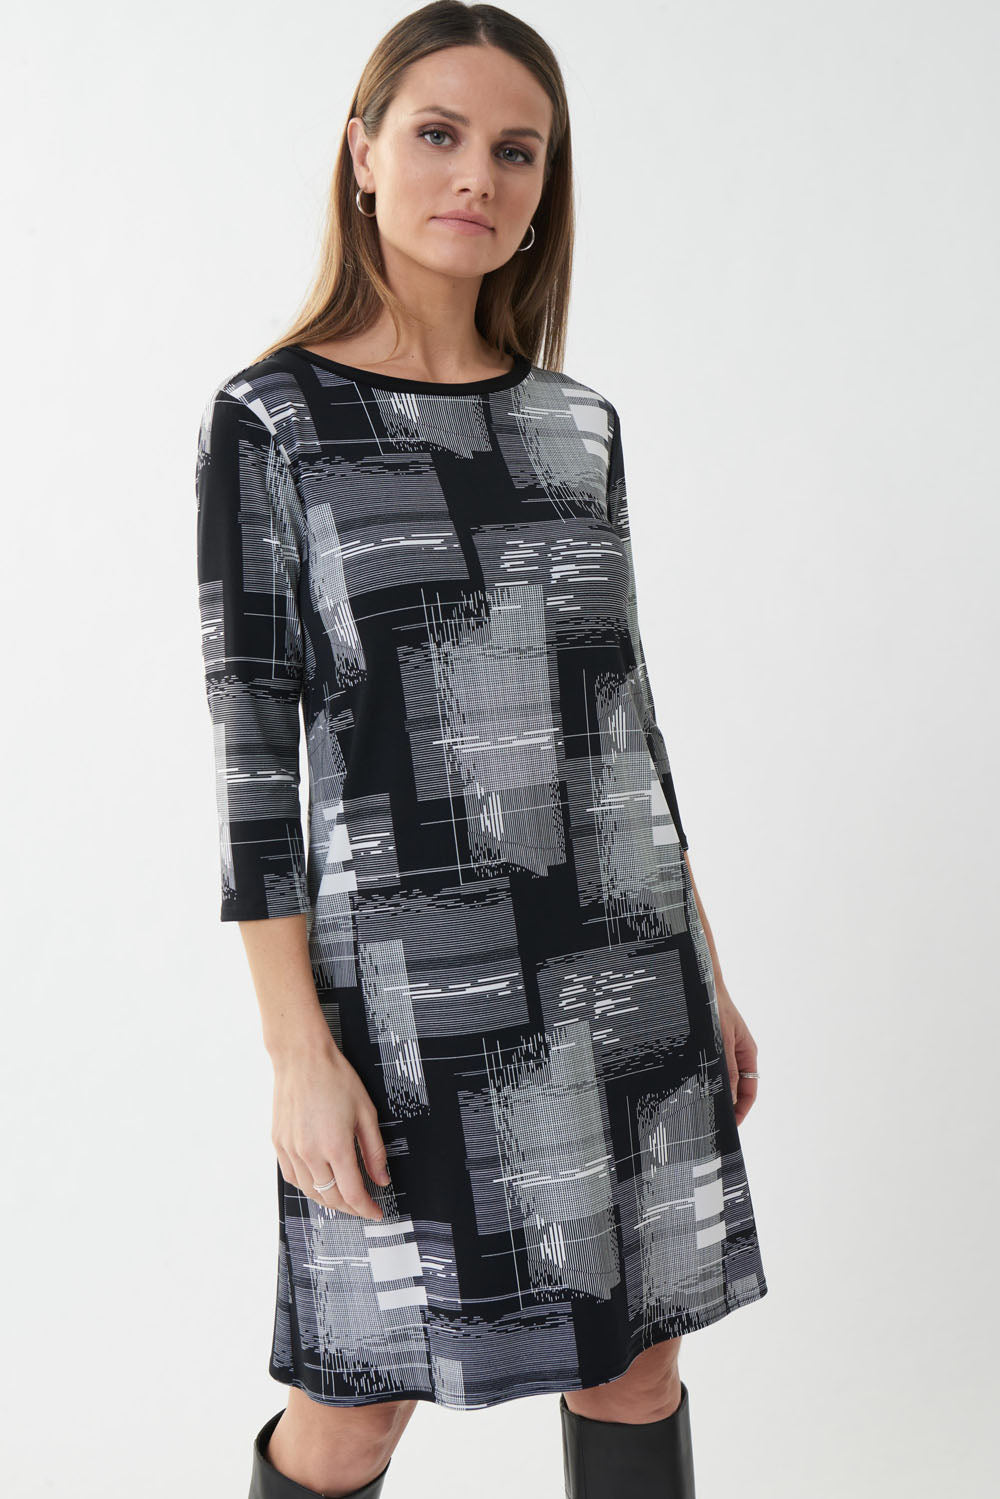 Joseph Ribkoff Black-White Checkered Print Dress Style 223259